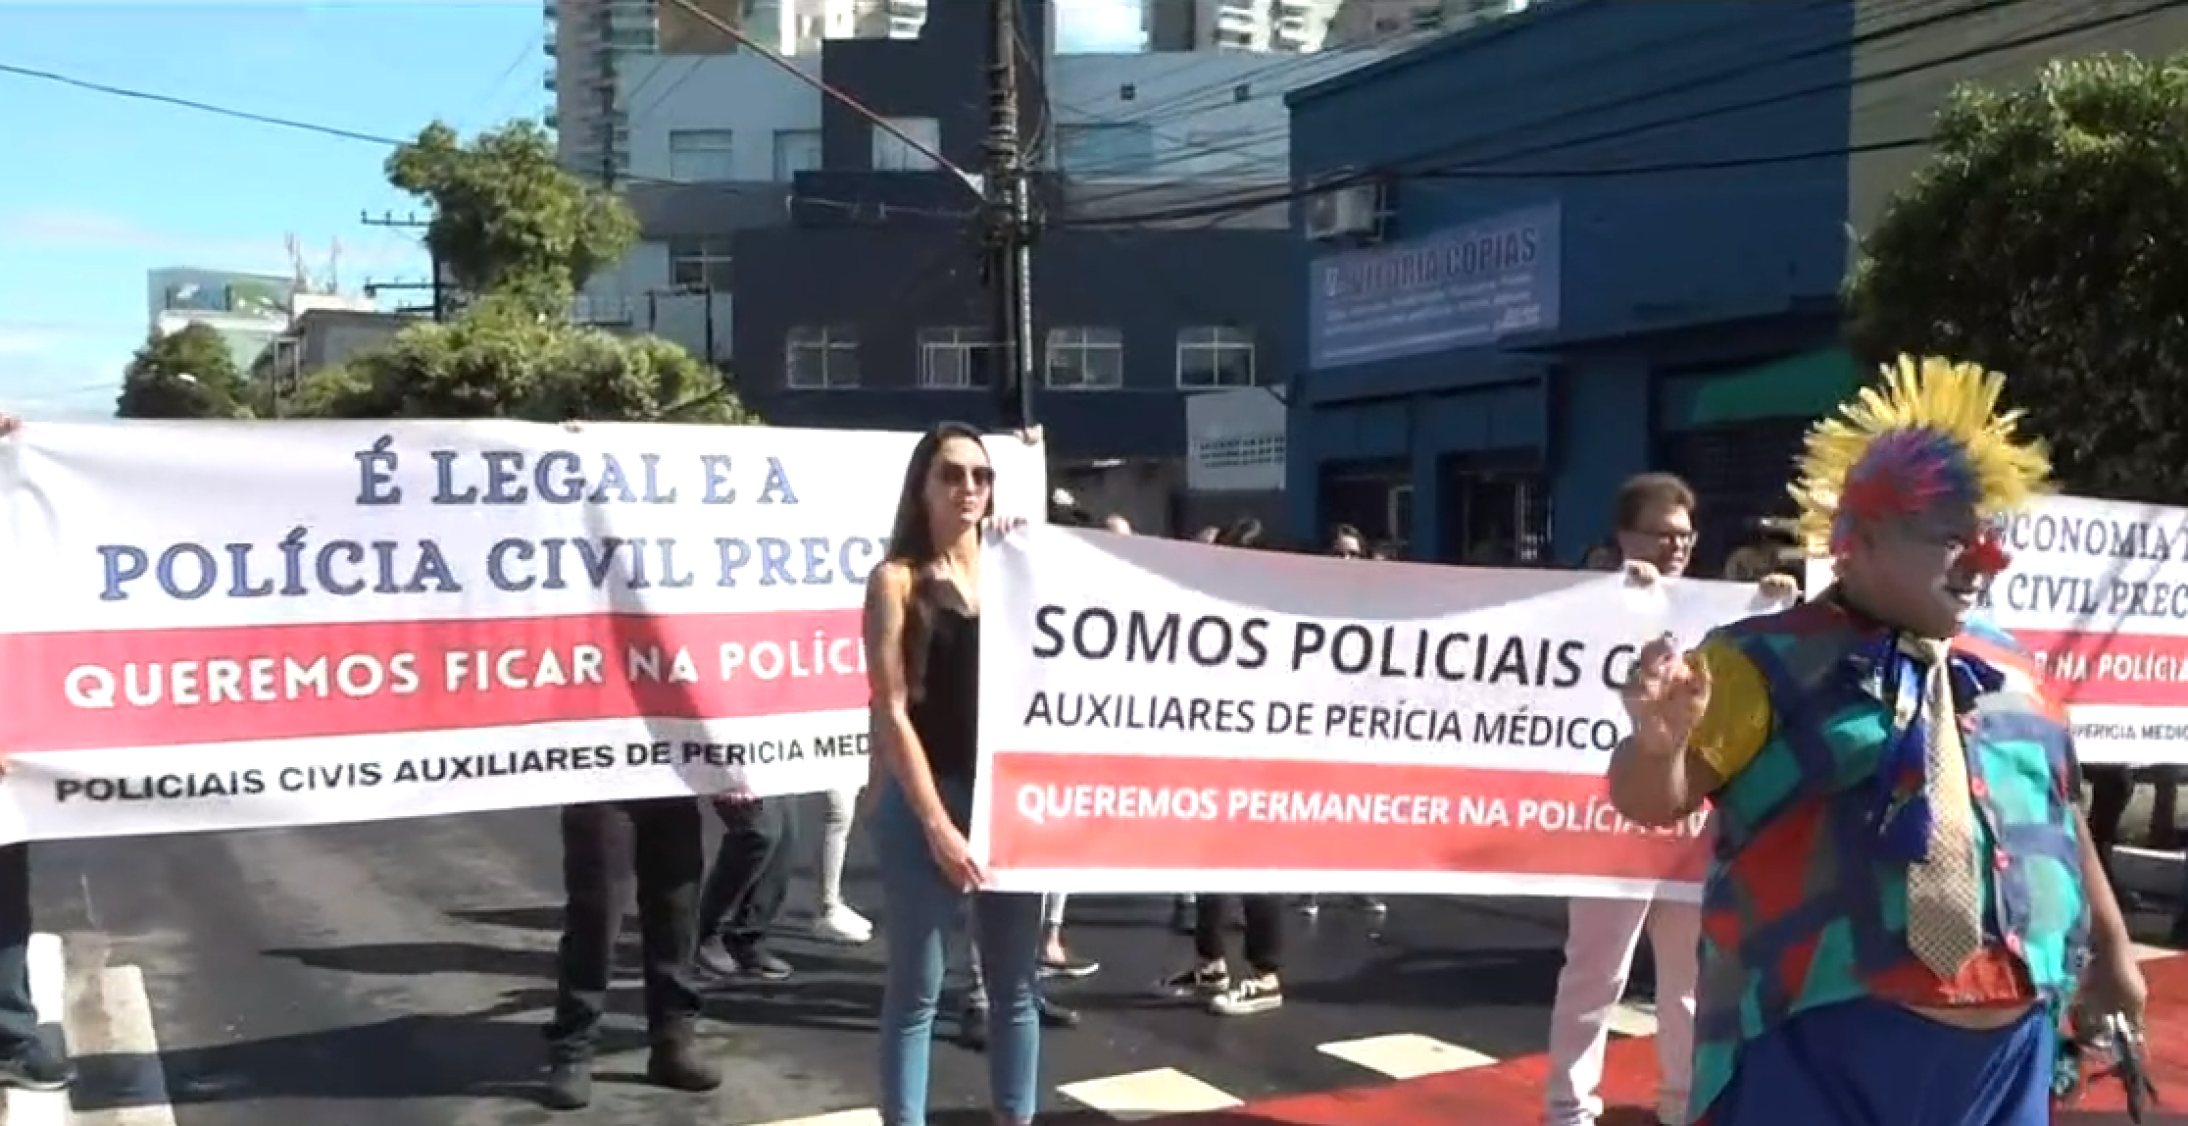 Dezenas de servidores ocuparam a avenida, na altura do bairro Santa Luíza, onde fica a Chefatura da Polícia Civil, interditando parcialmente a via (sentido Serra)